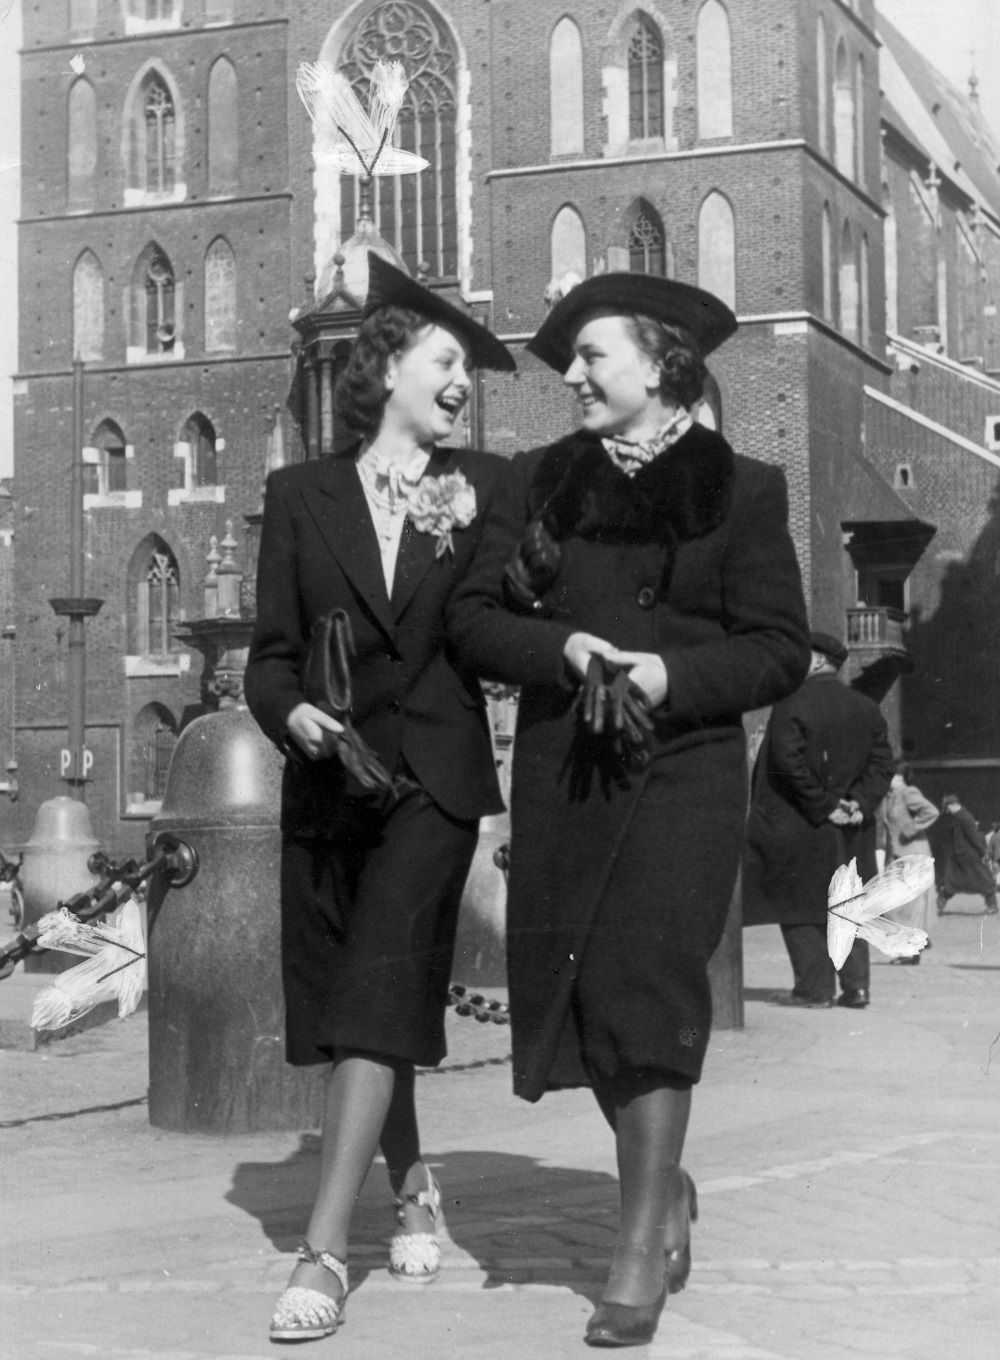 Dwie kobiety na spacerze przed Kościołem Mariackim w sesji niemieckiego fotografa z 1940 roku (fot. domena publiczna)